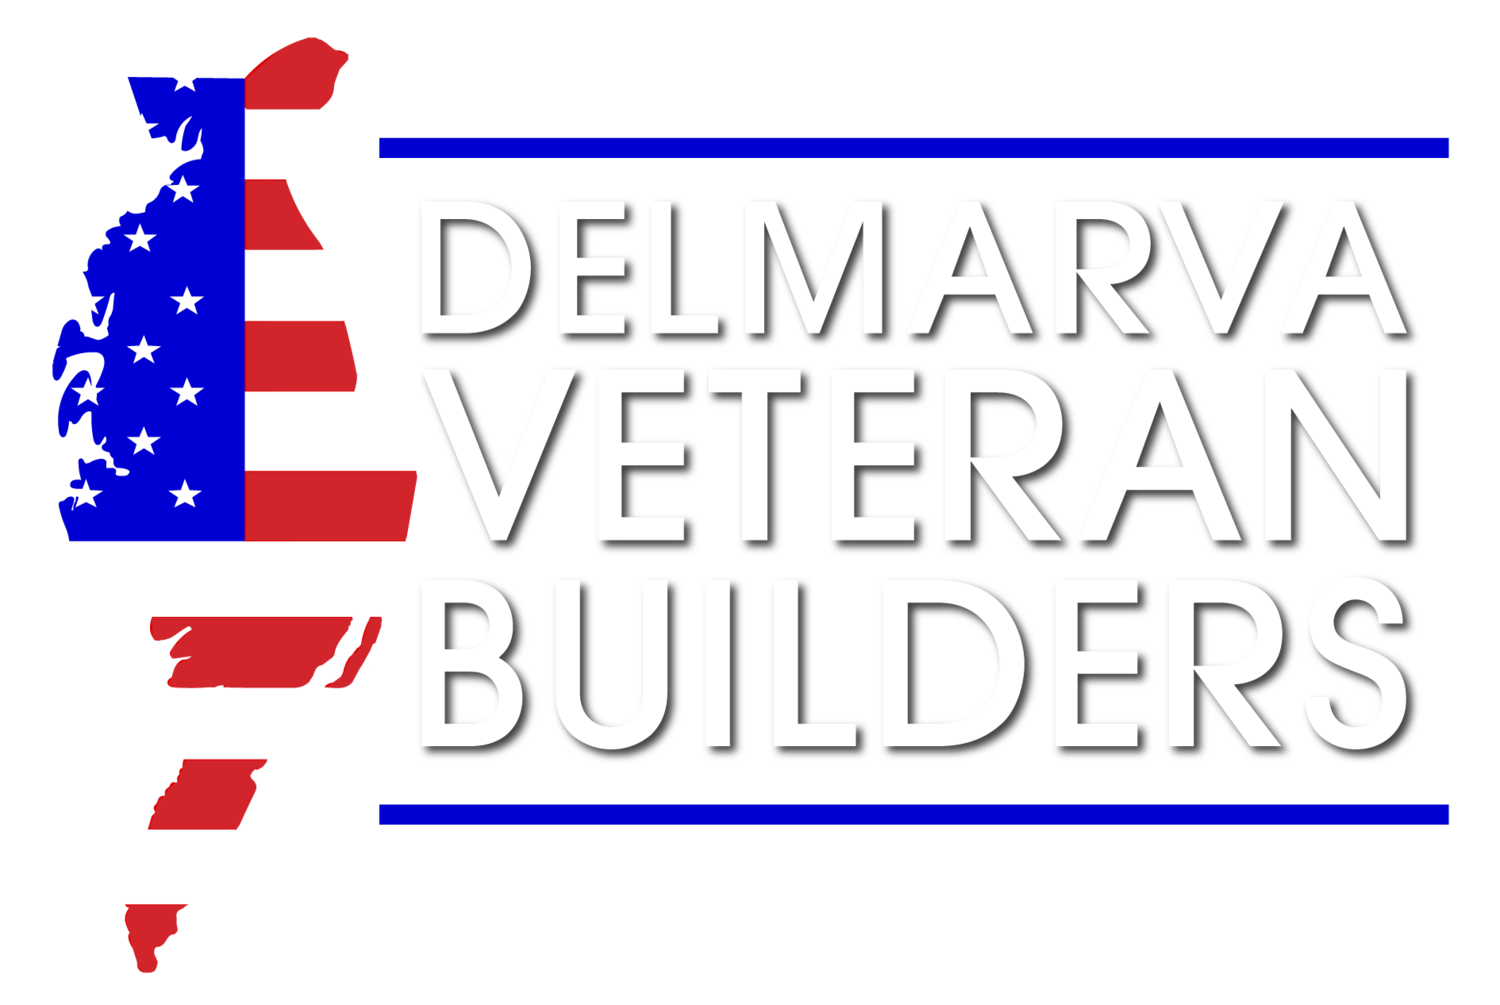 Delmarva Veteran Builders Hired To Renovate Ashley Furniture Store